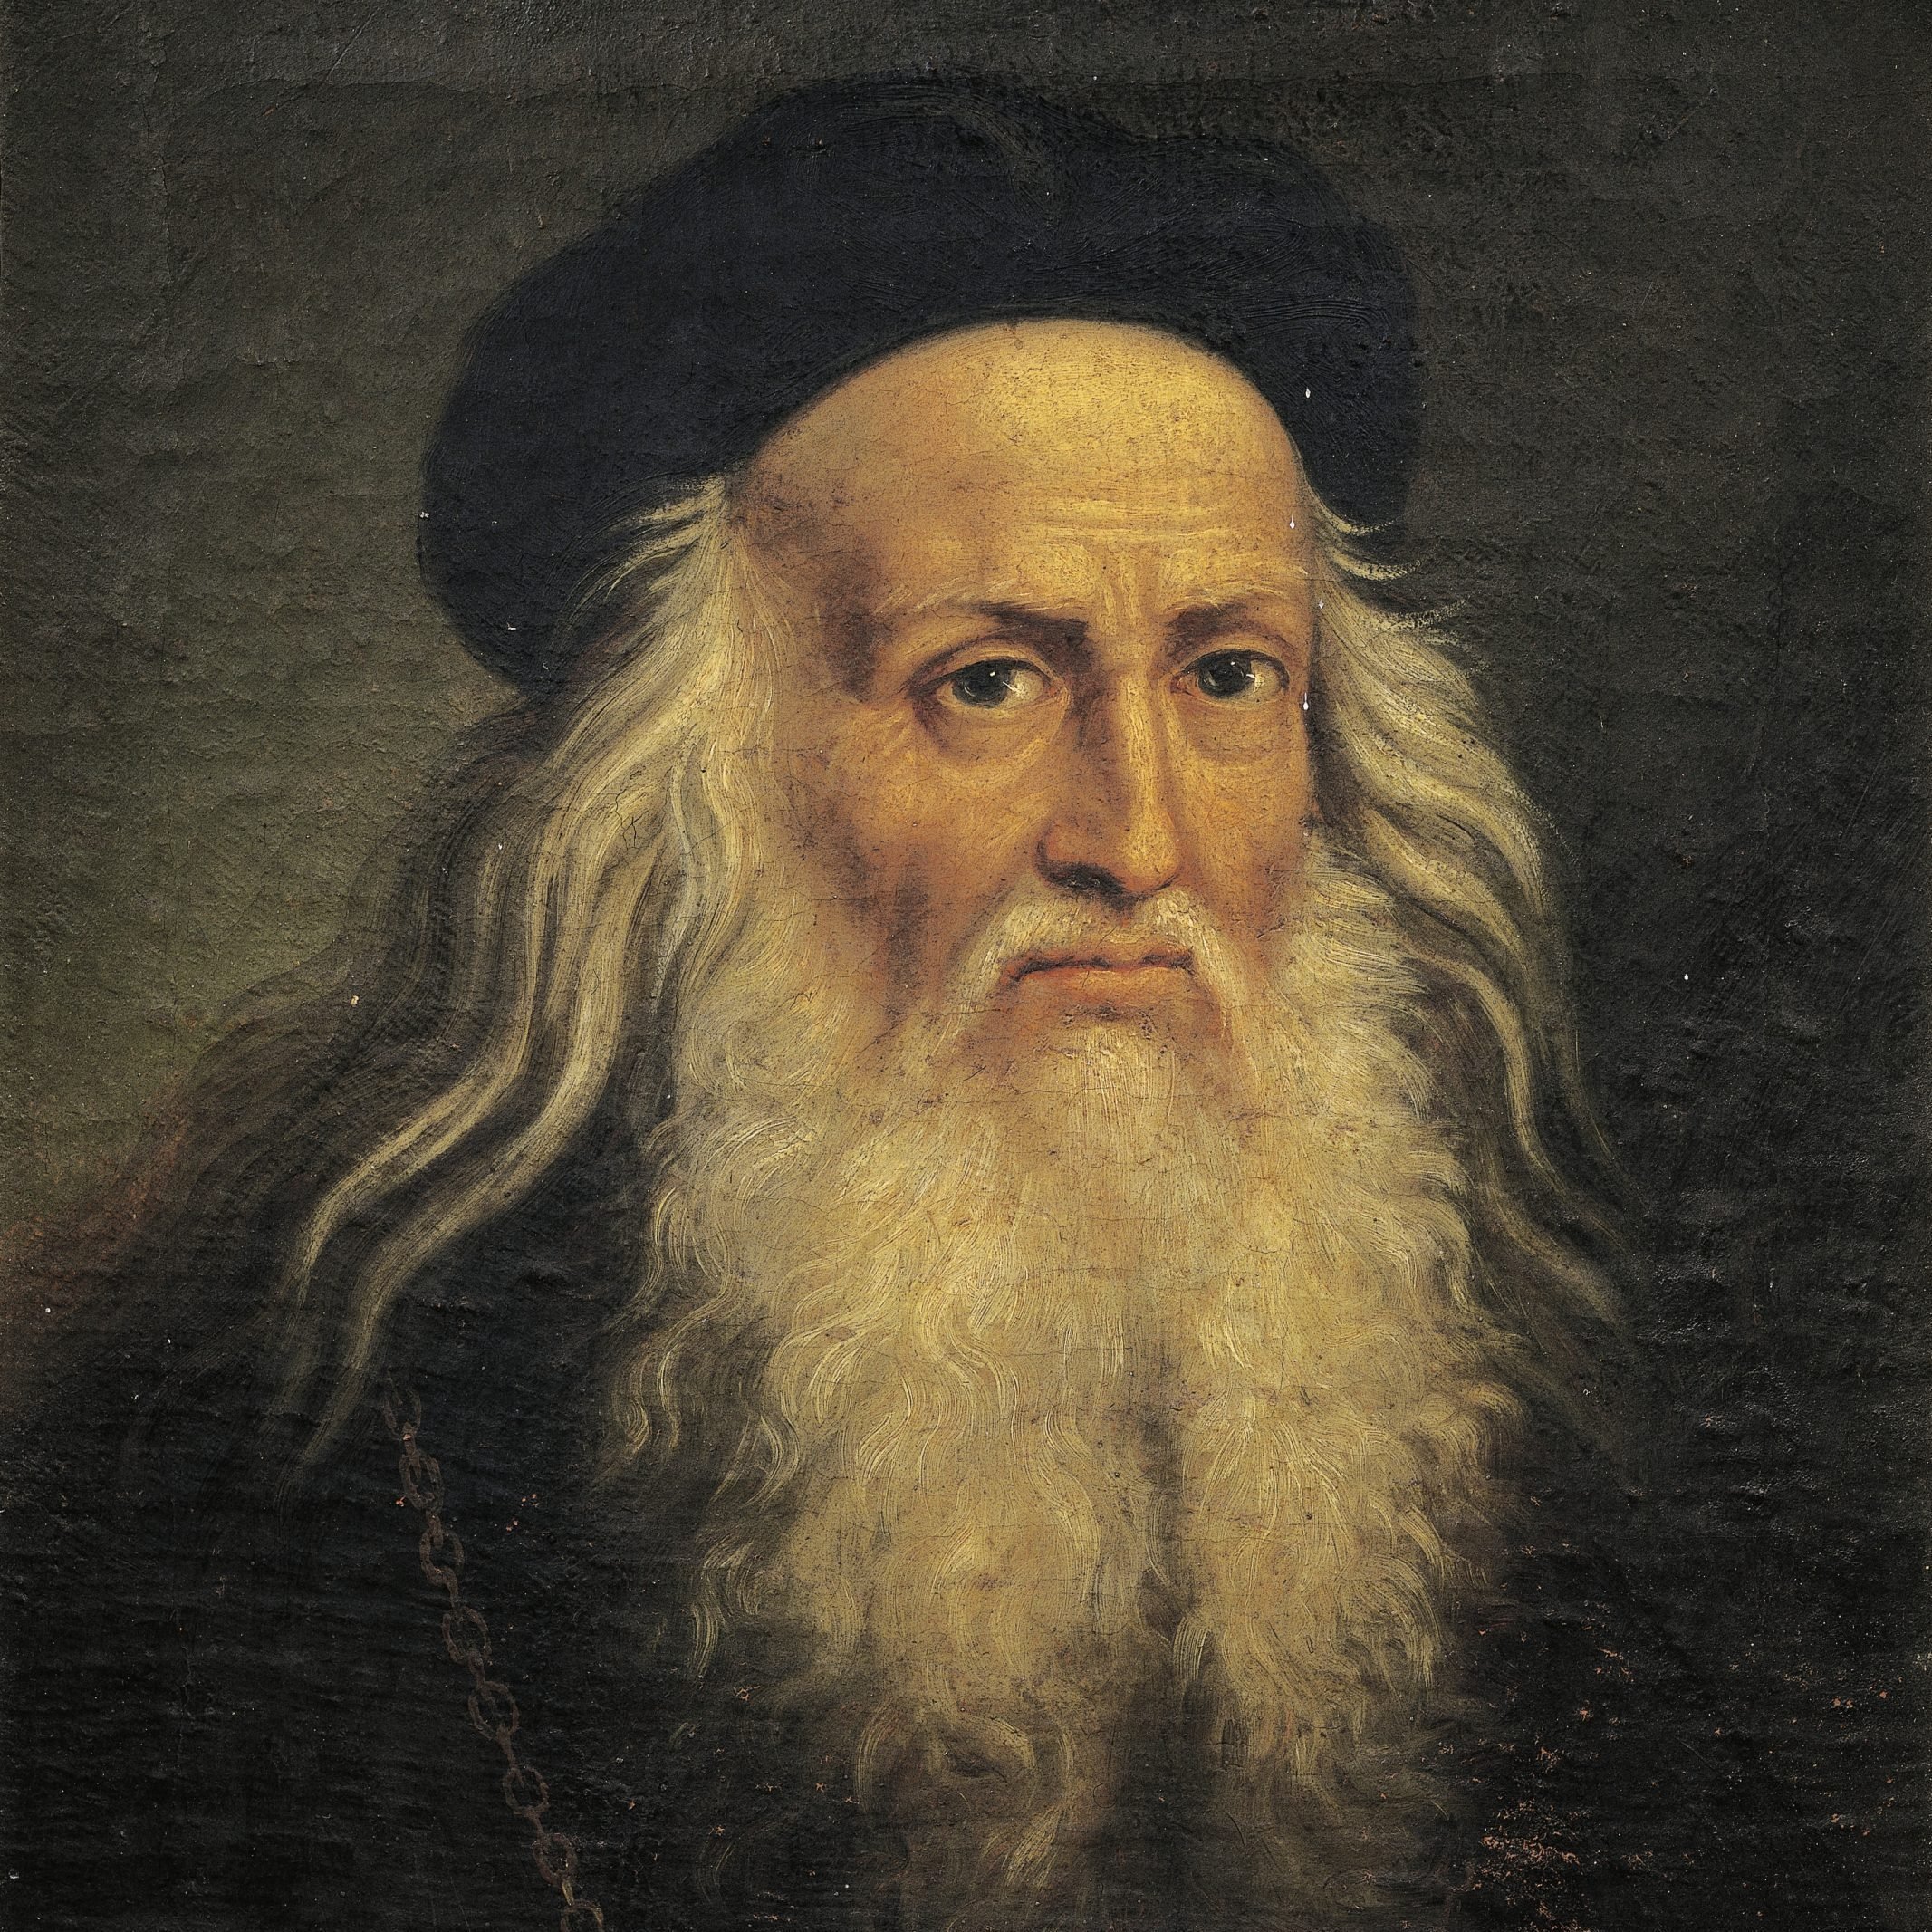 Portrait of Leonardo da Vinci, by Lattanzio Querena (1768-1853).